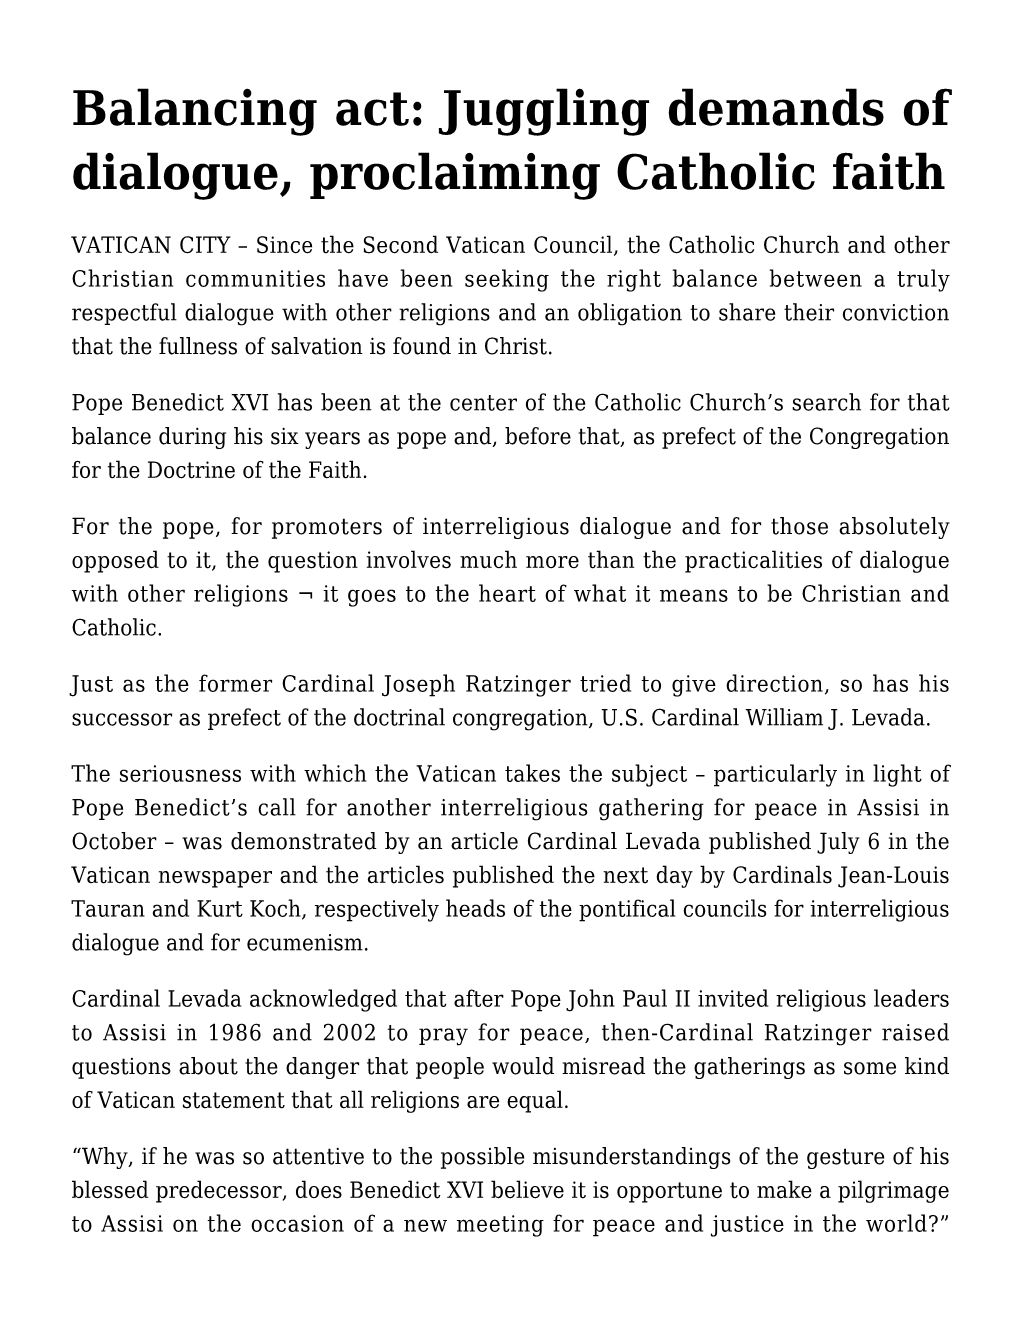 Balancing Act: Juggling Demands of Dialogue, Proclaiming Catholic Faith